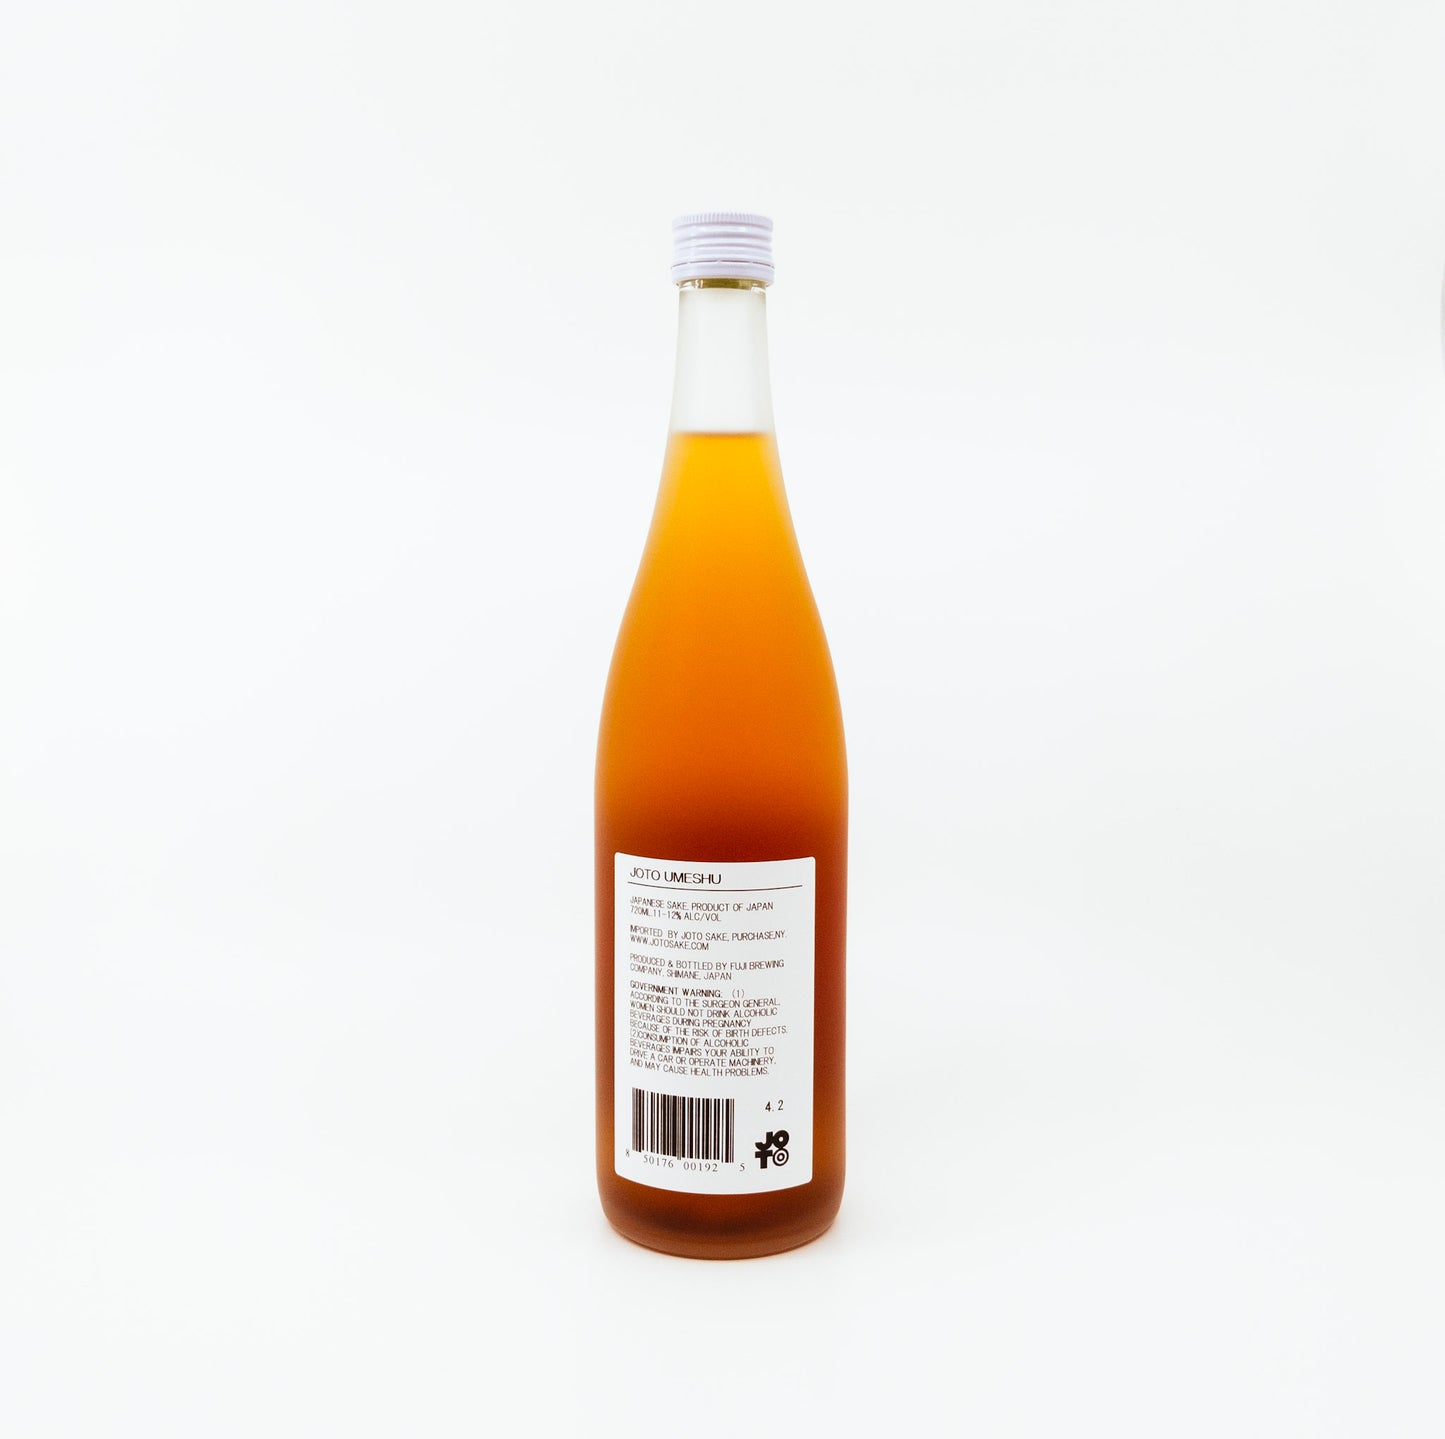 back of orange glass bottle with orange flower on label